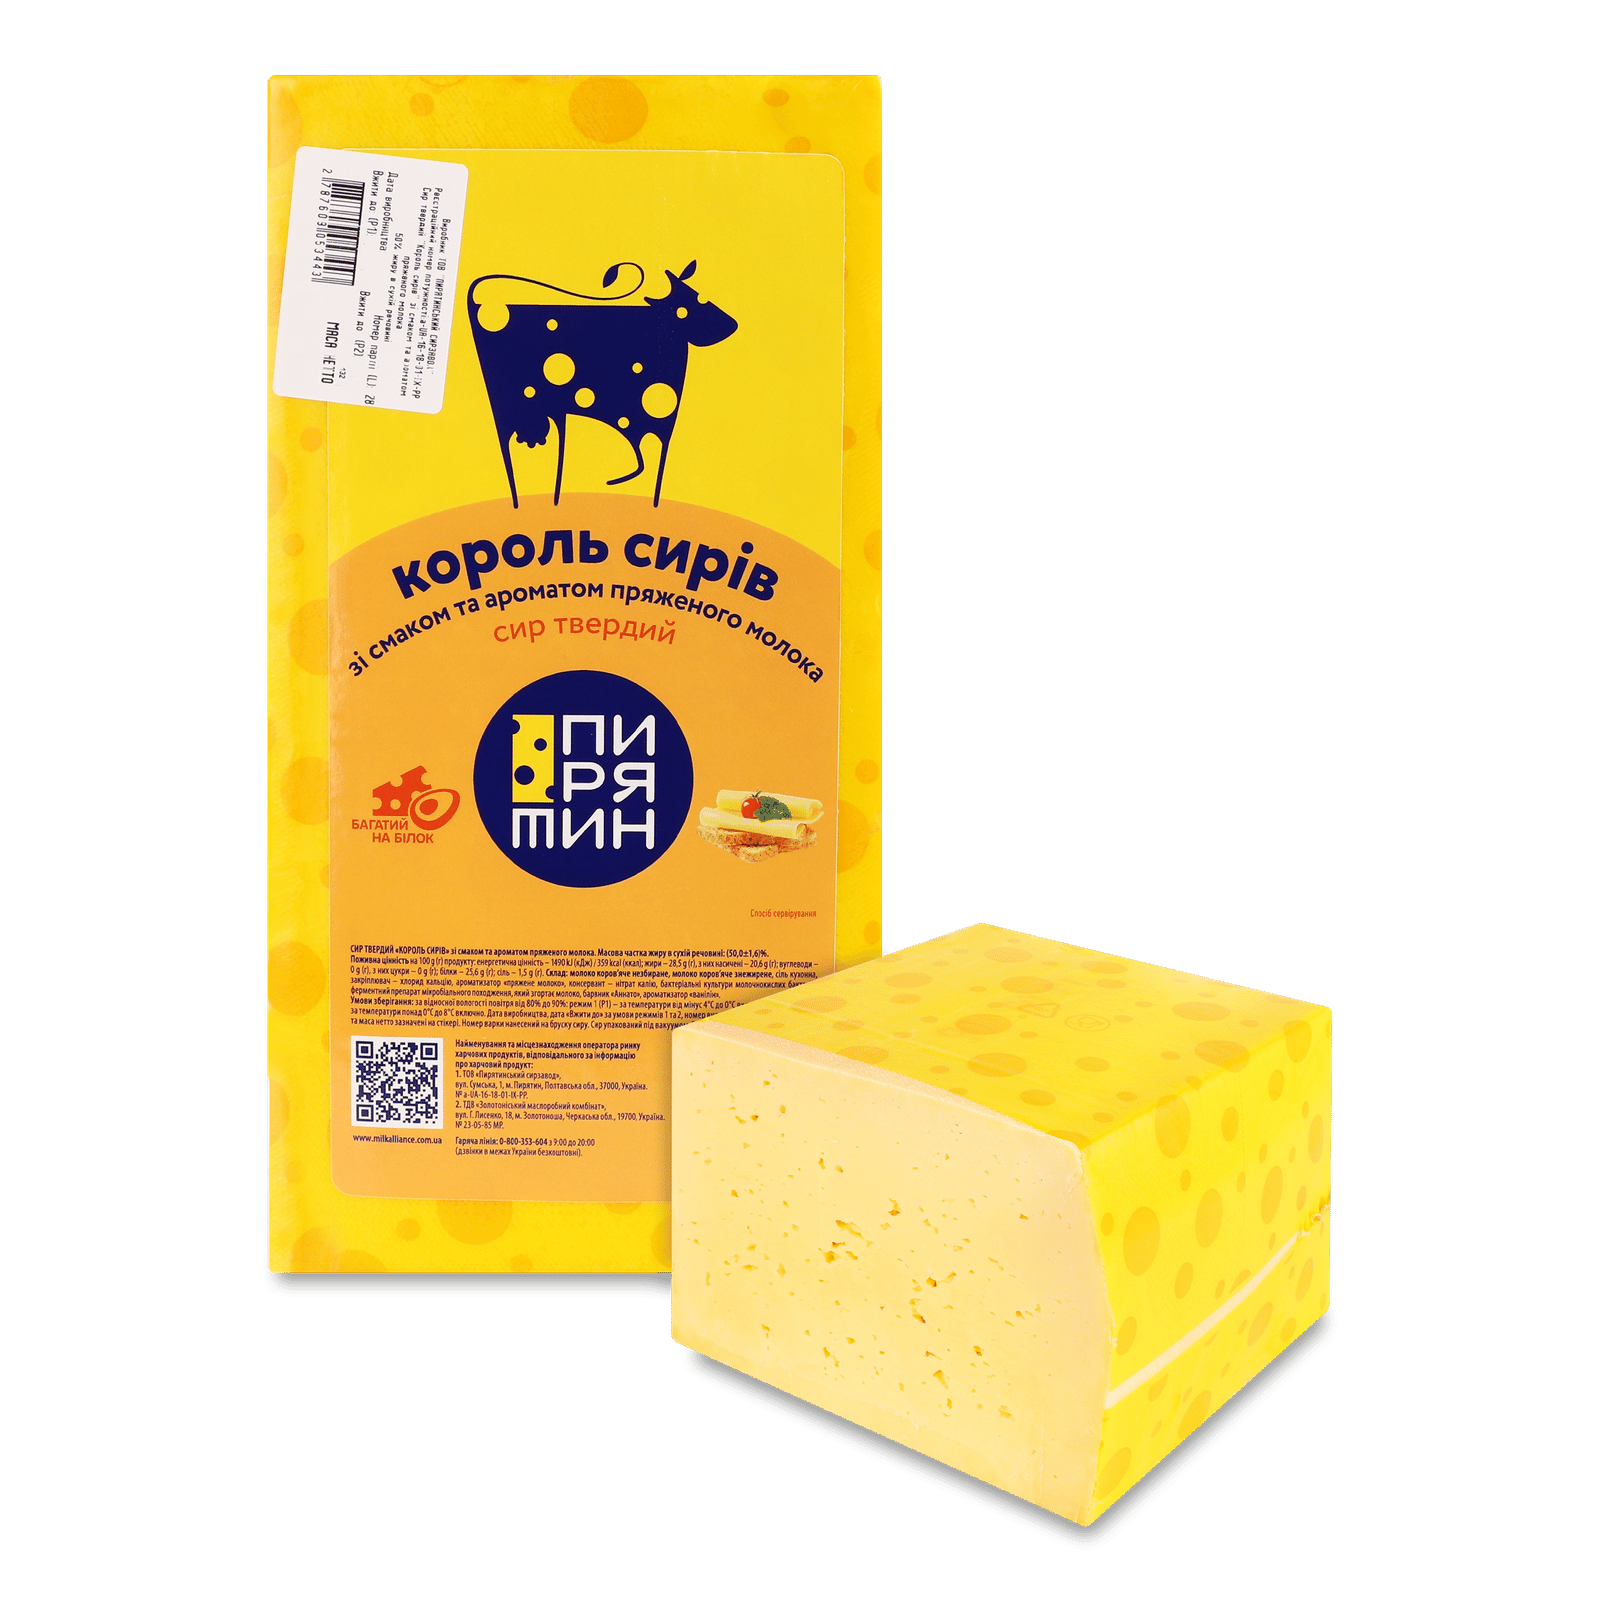 Сир «Пирятин» «Король сирів» зі смаком пряженого молока 50% - 1